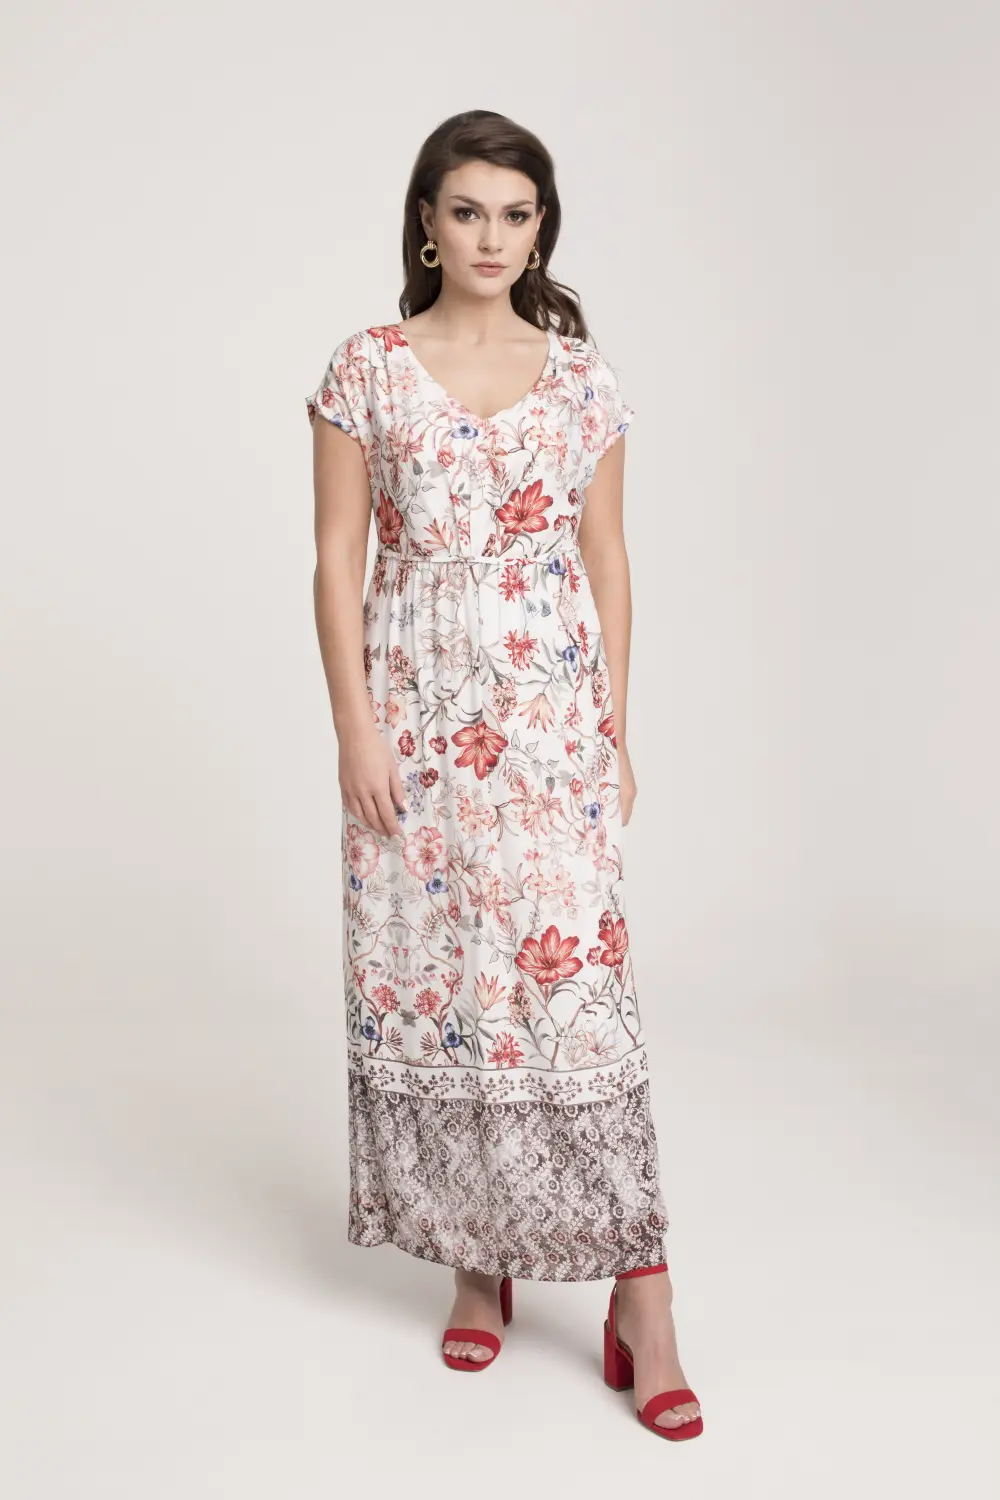 Sukienka maksi w kolorowe kwiaty. Długa sukienka z wiskozy odcinana w talii z dekoltem V polska marka Vito Vergelis